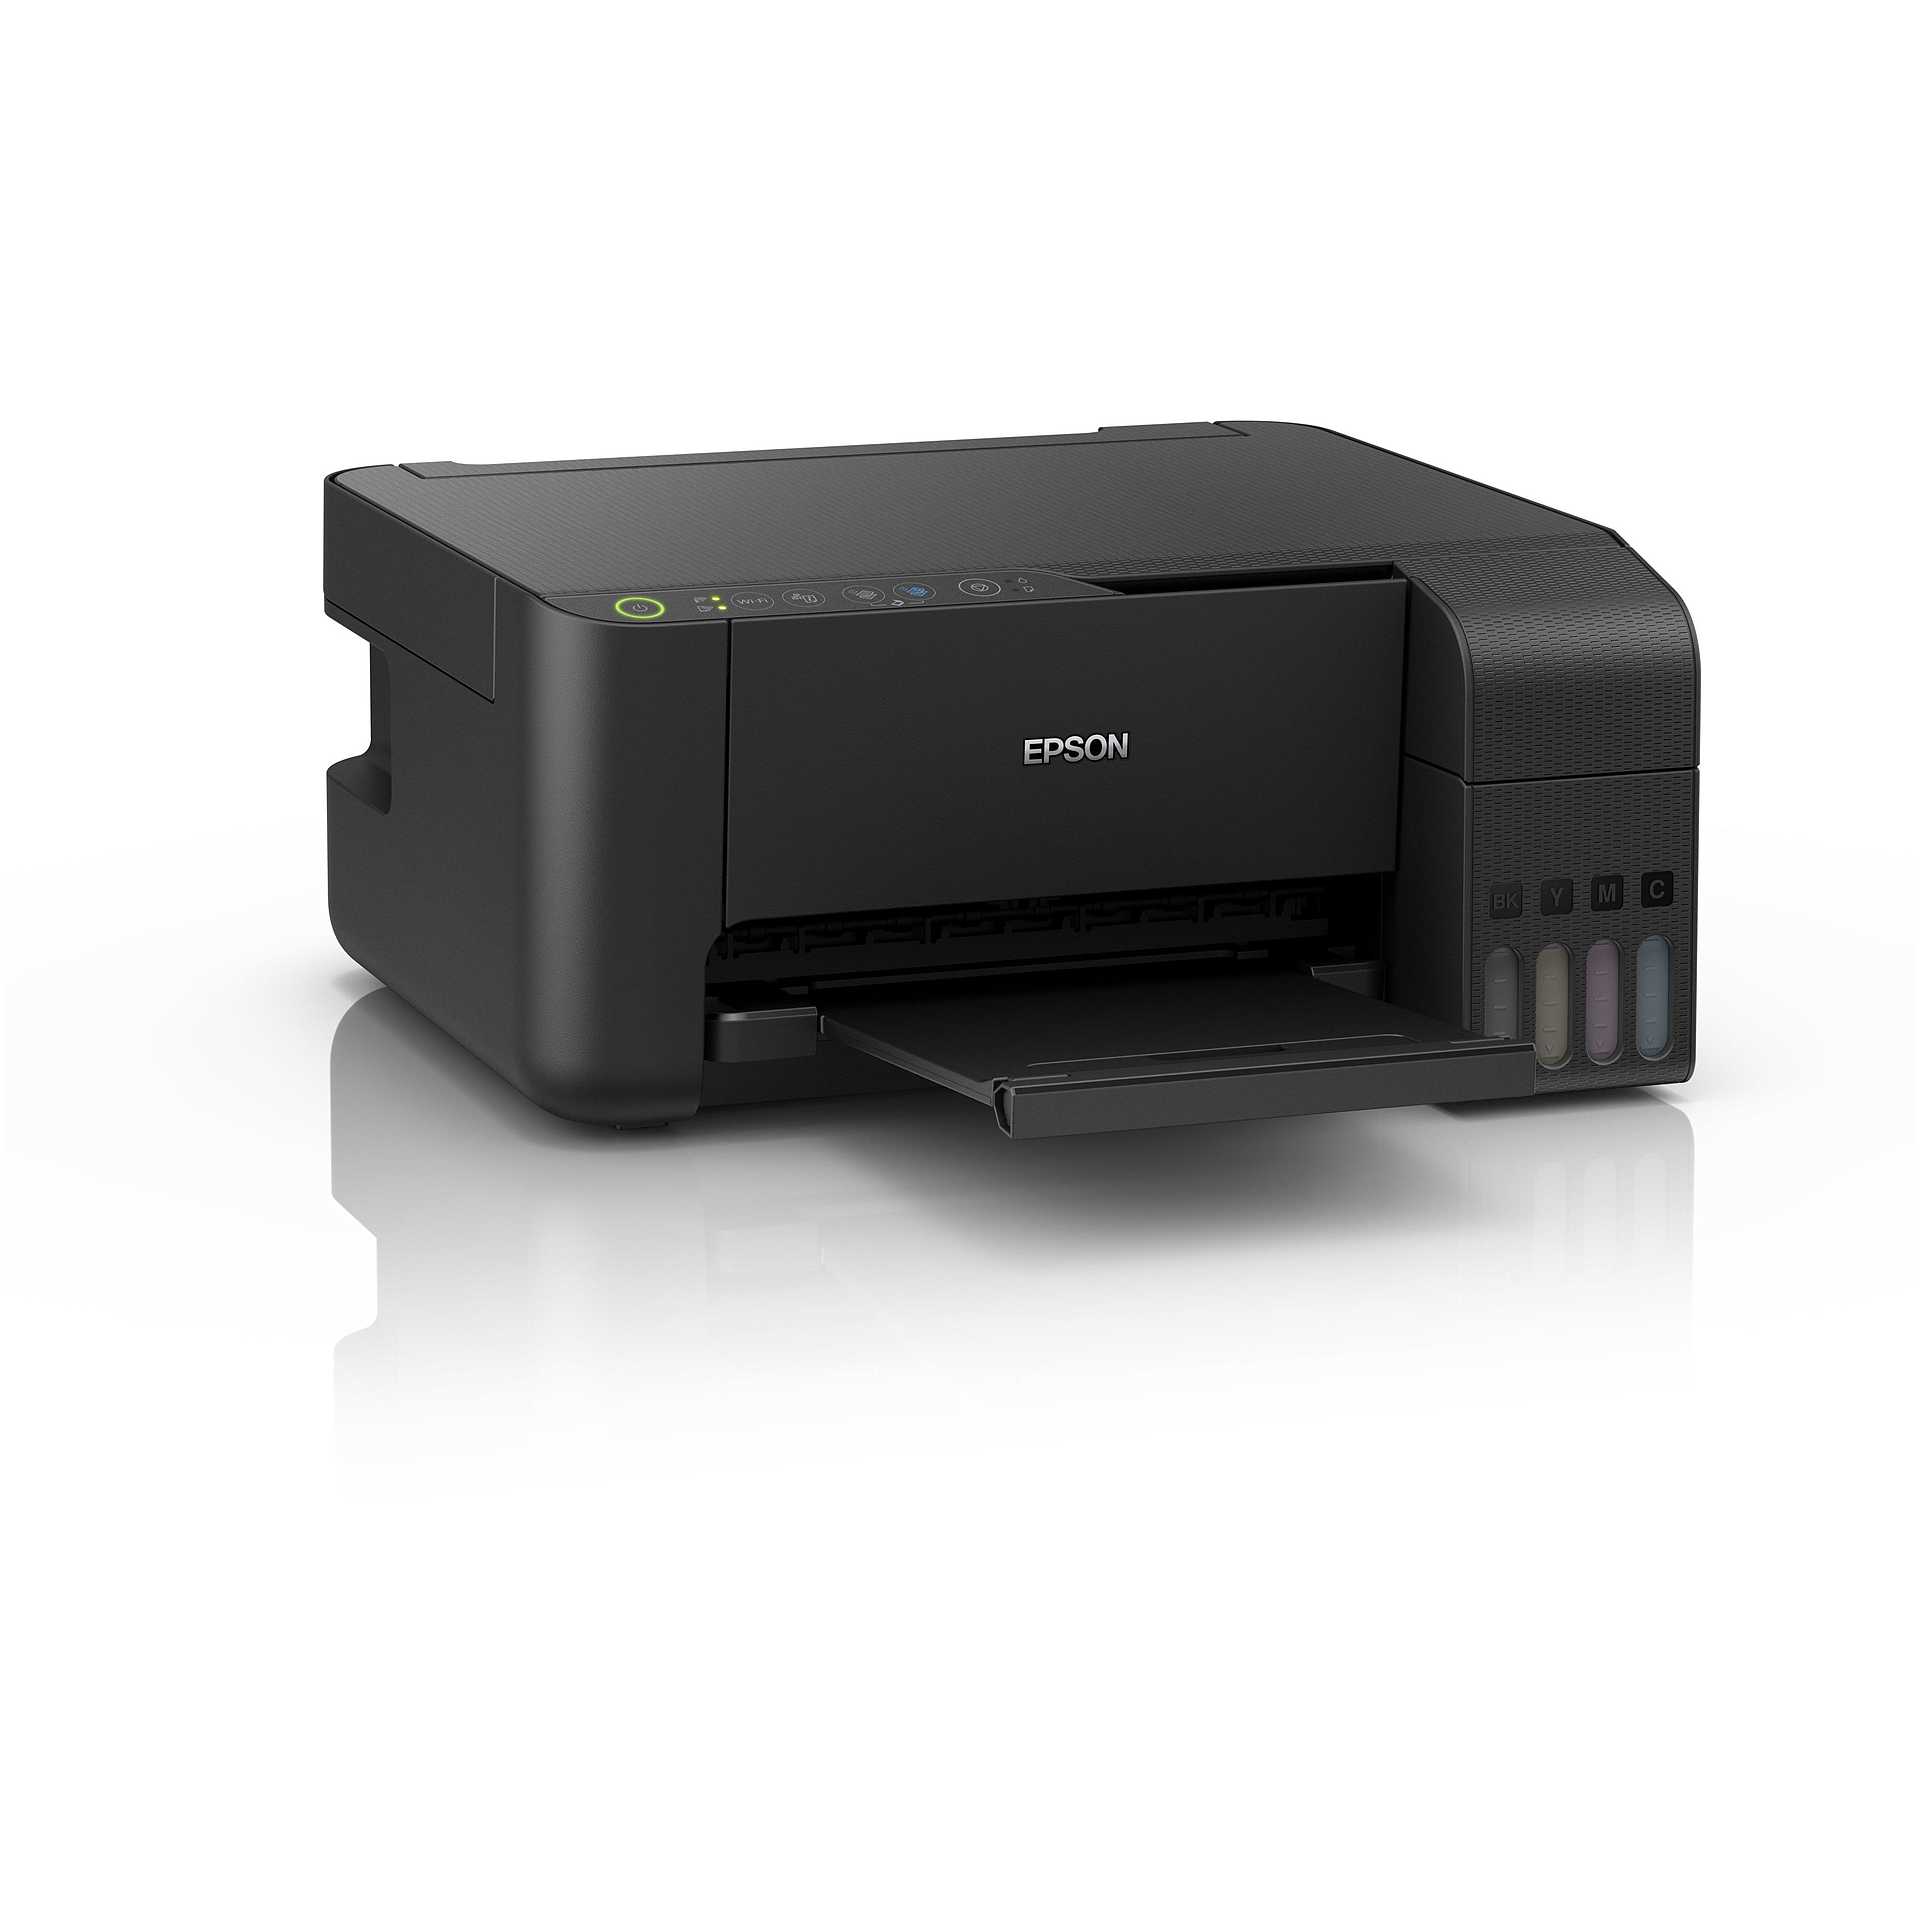 Epson Ecotank Et 2714 Stampante Multifunzione 3 In 1 Wi Fi Colore Nero Stampanti E Scanner 4432